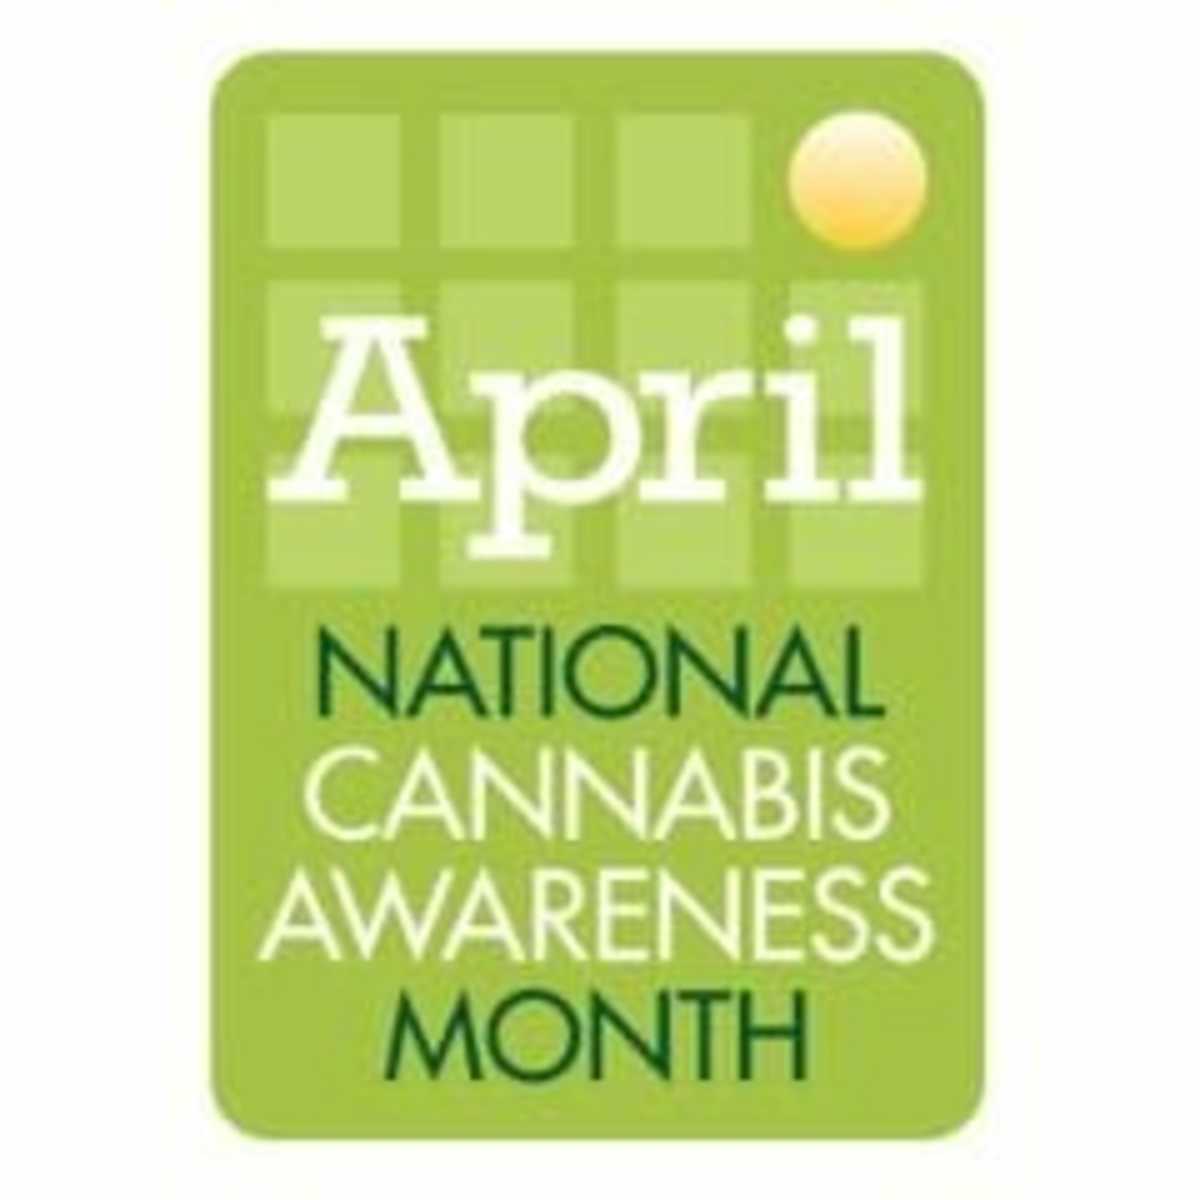 National Cannabis Awareness Month April